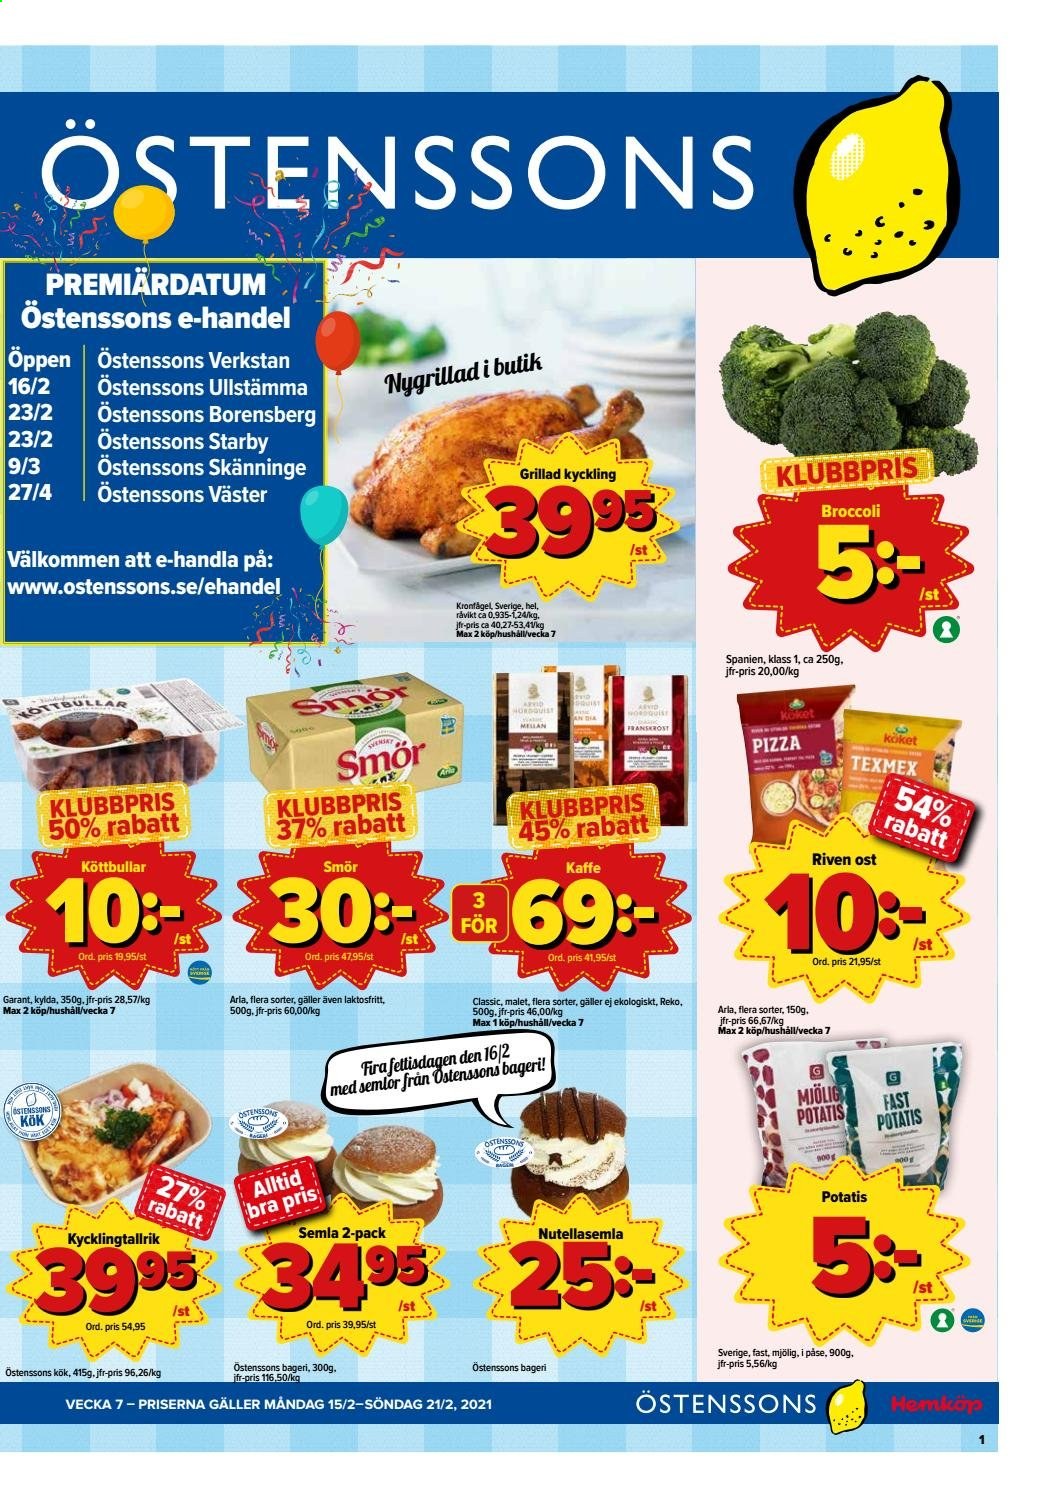 thumbnail - Östenssons reklamblad - 15/2 2021 - 21/2 2021 - varor från reklamblad - kyckling, grillad kyckling, broccoli, potatis, pizza, köttbullar, ost, Arla, smör, kaffe. Sida 1.